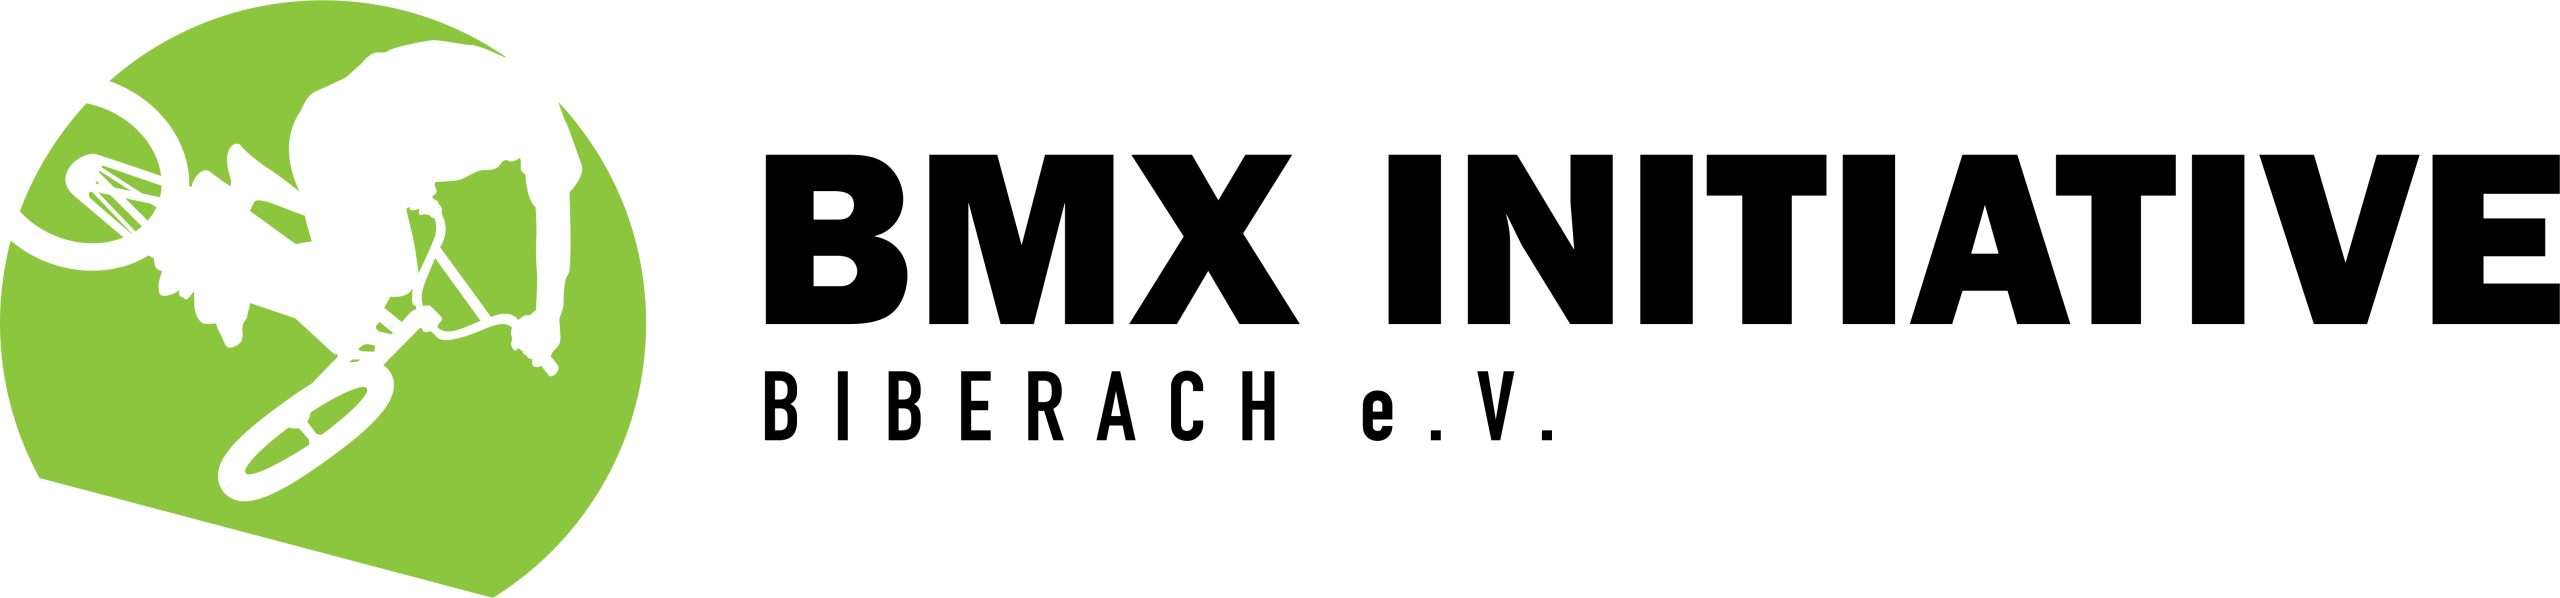 BMX Initiative Biberach e.V.